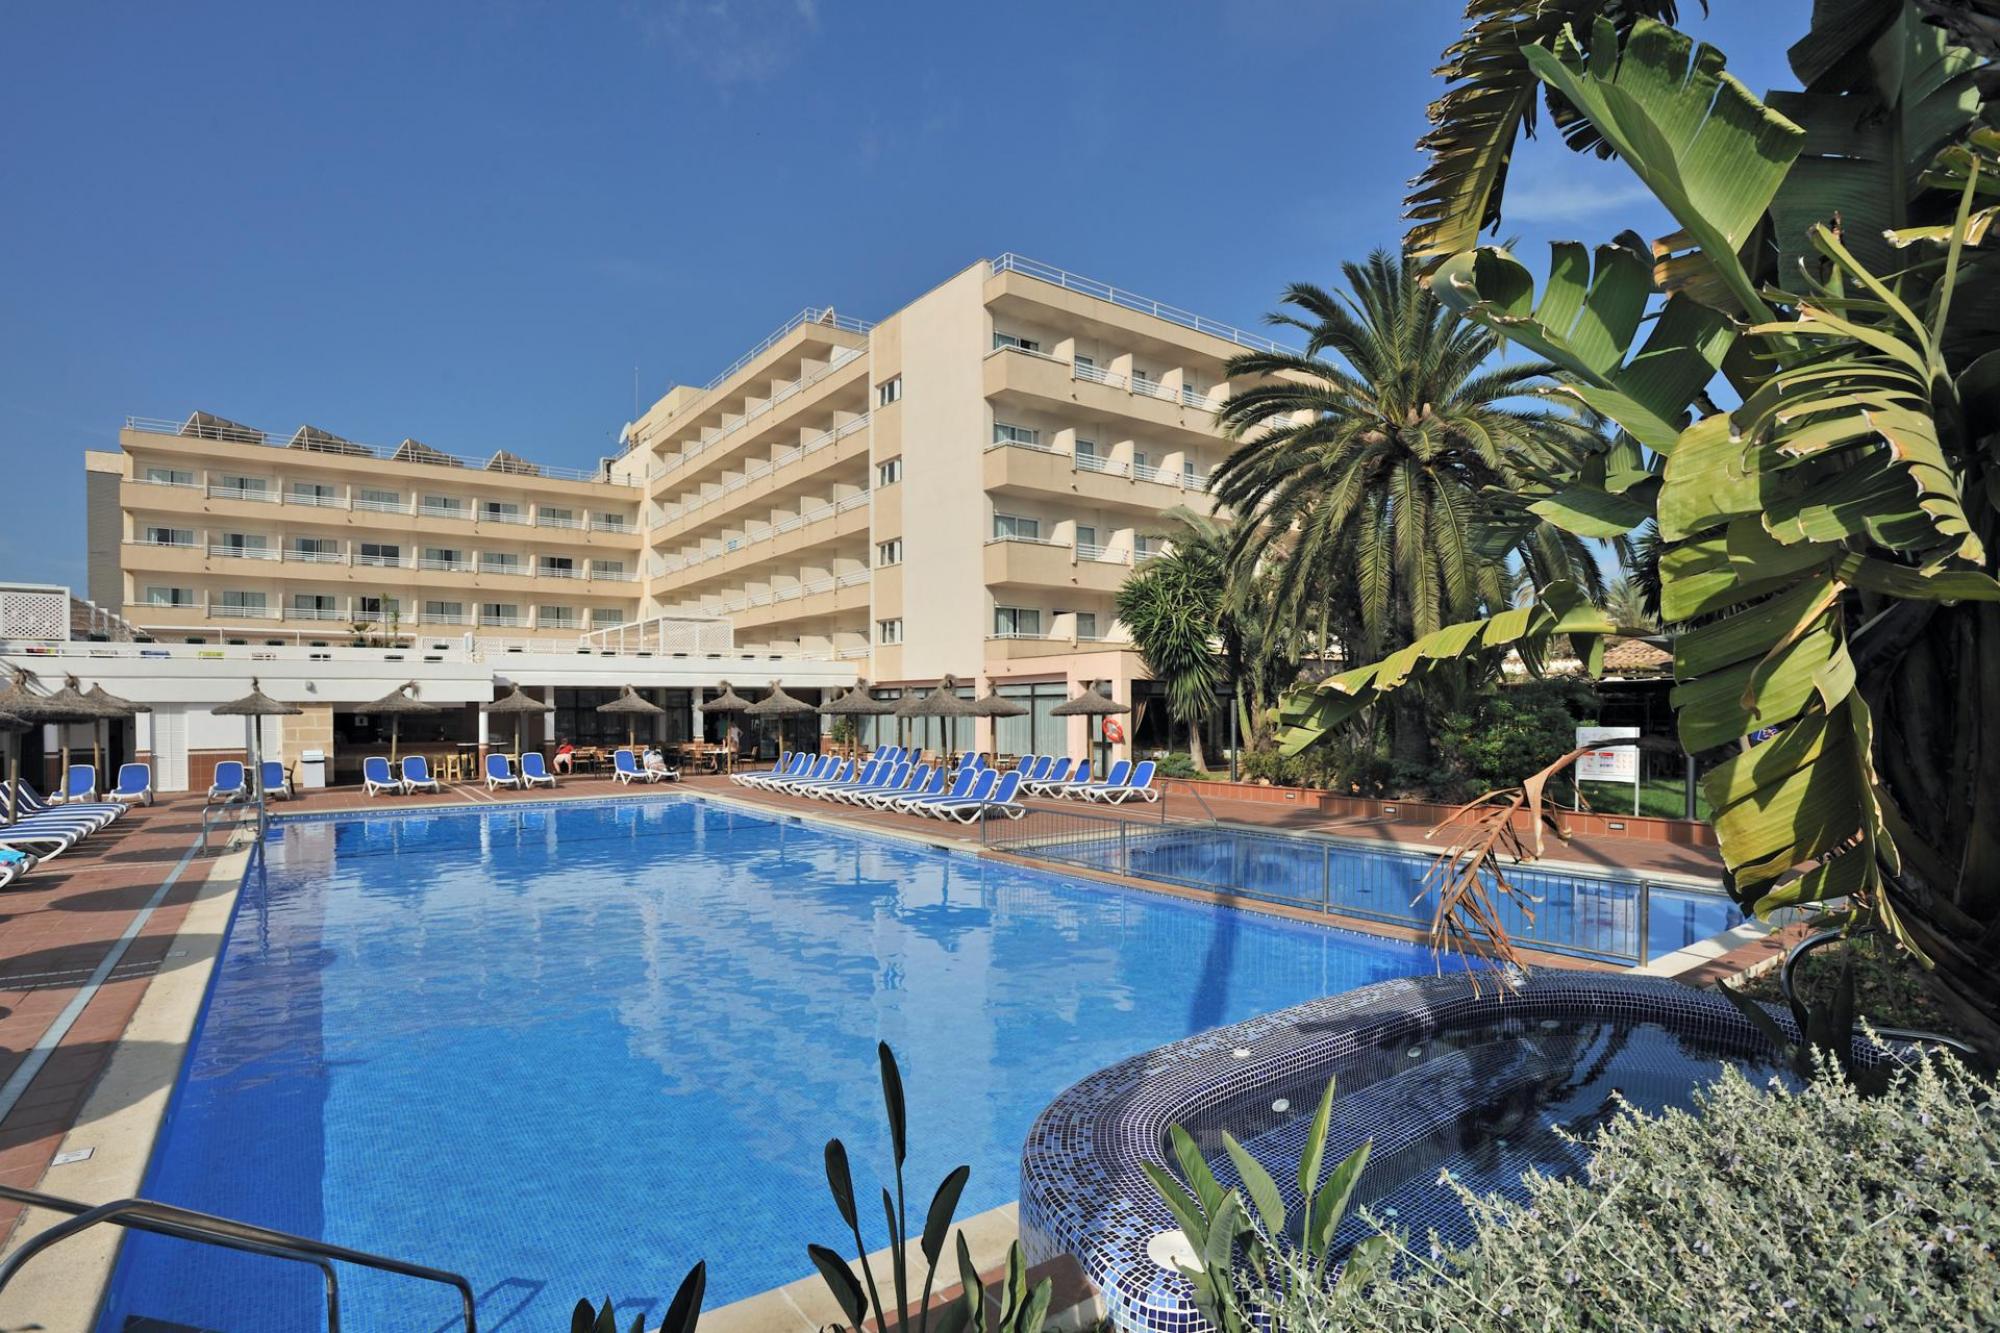 The Pionero Hotel's impressive main pool within impressive Mallorca.